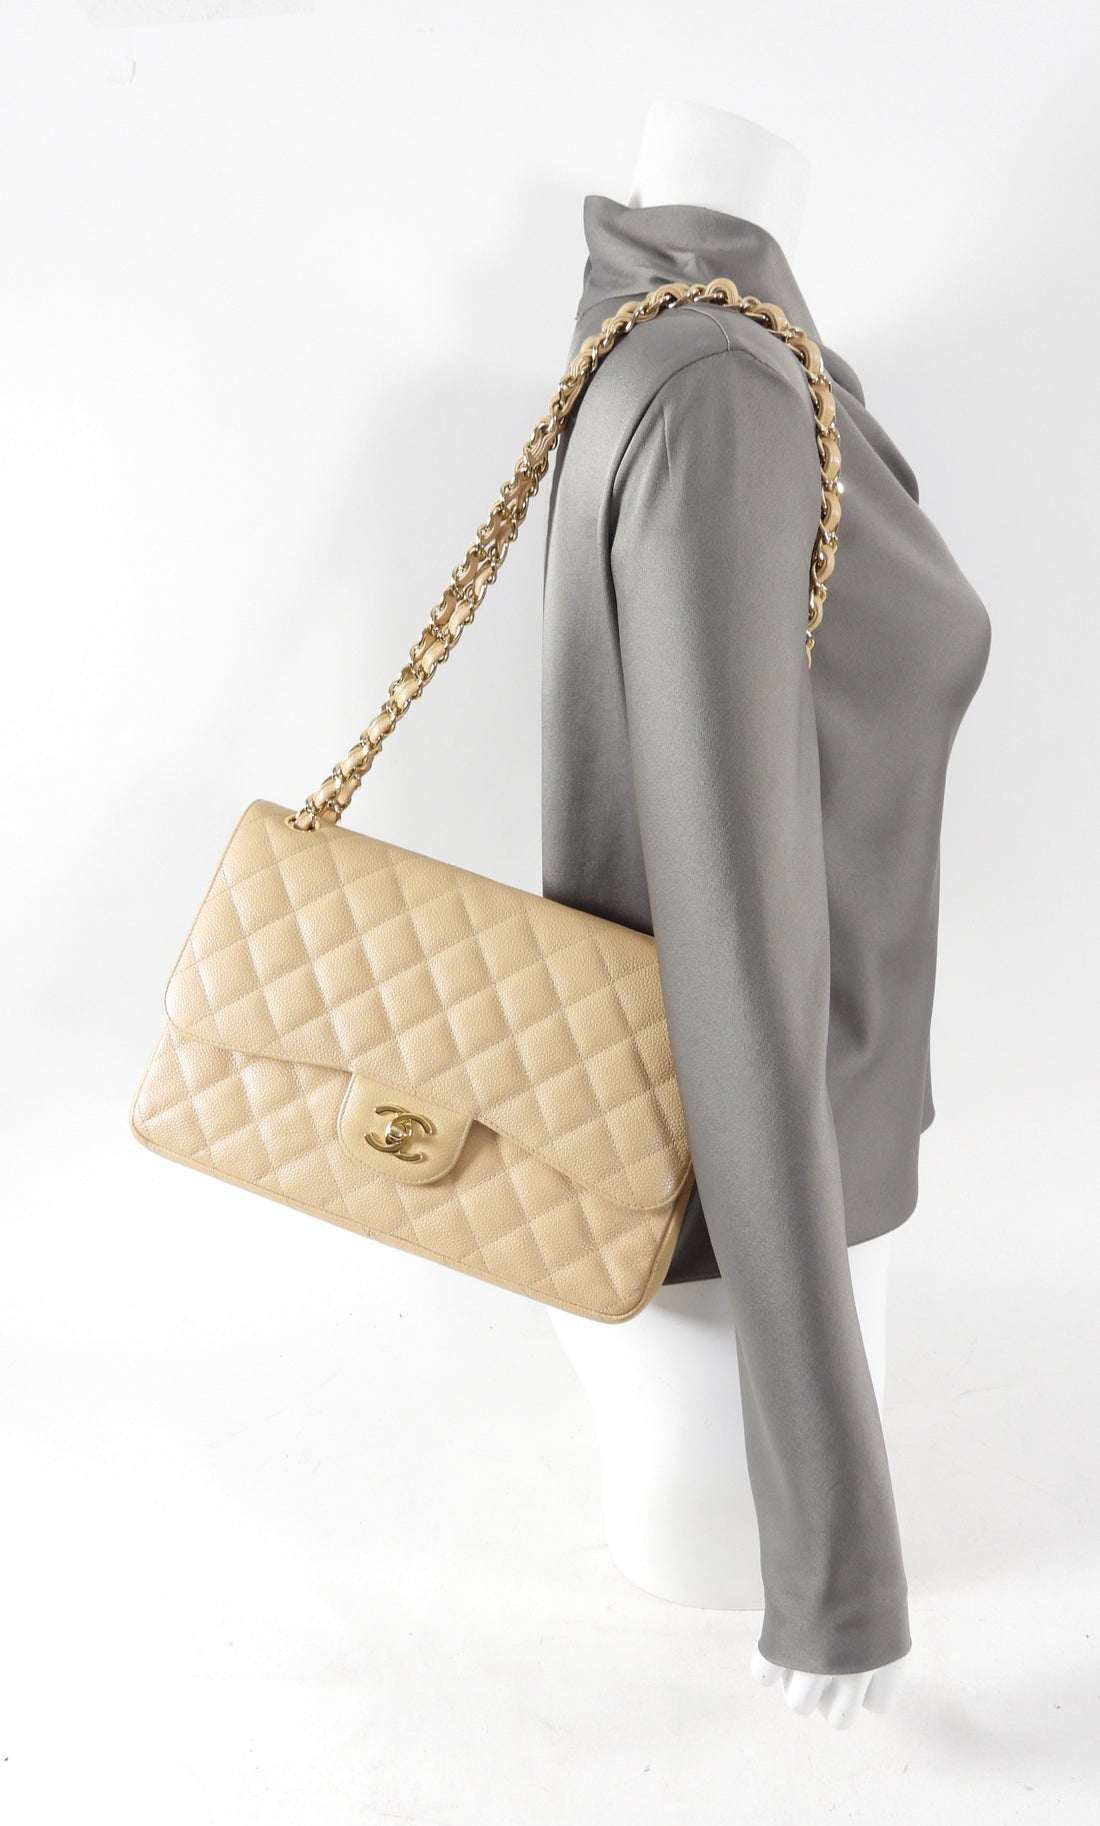 Chanel Jumbo Classic Double Flap Bag Beige GHW